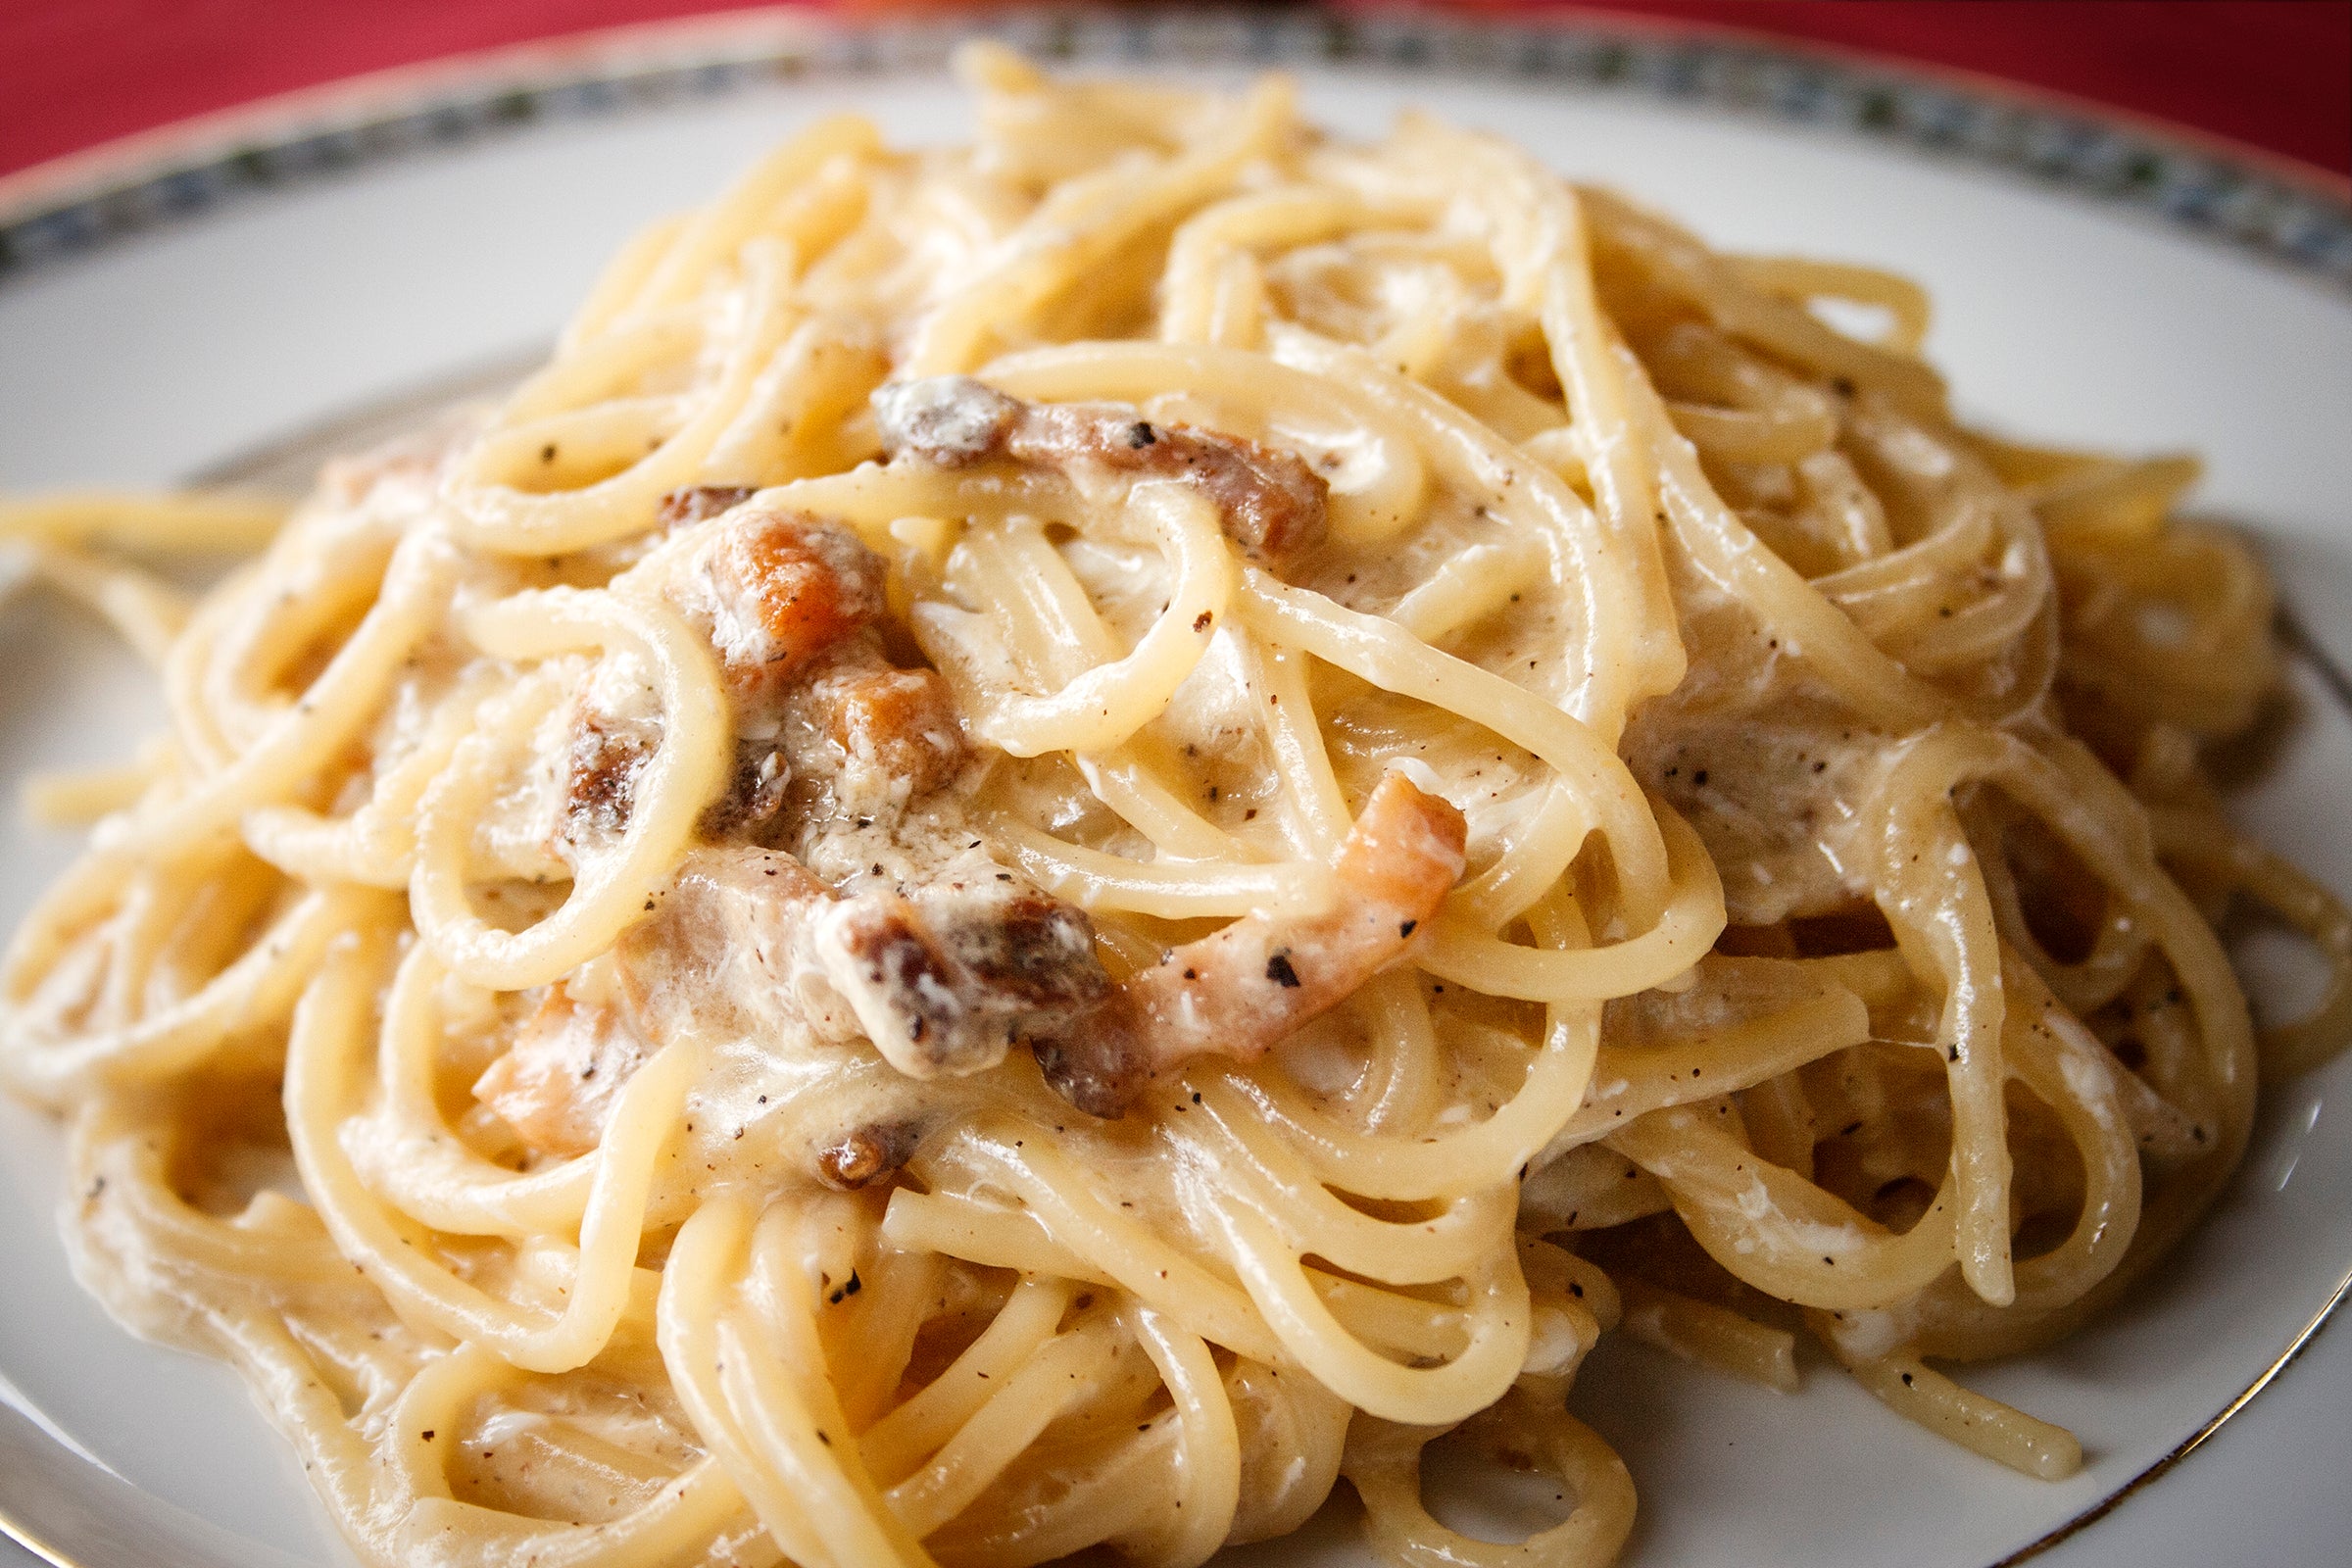 Sainsbury’s Spaghetti Carbonara was found to contain mustard.